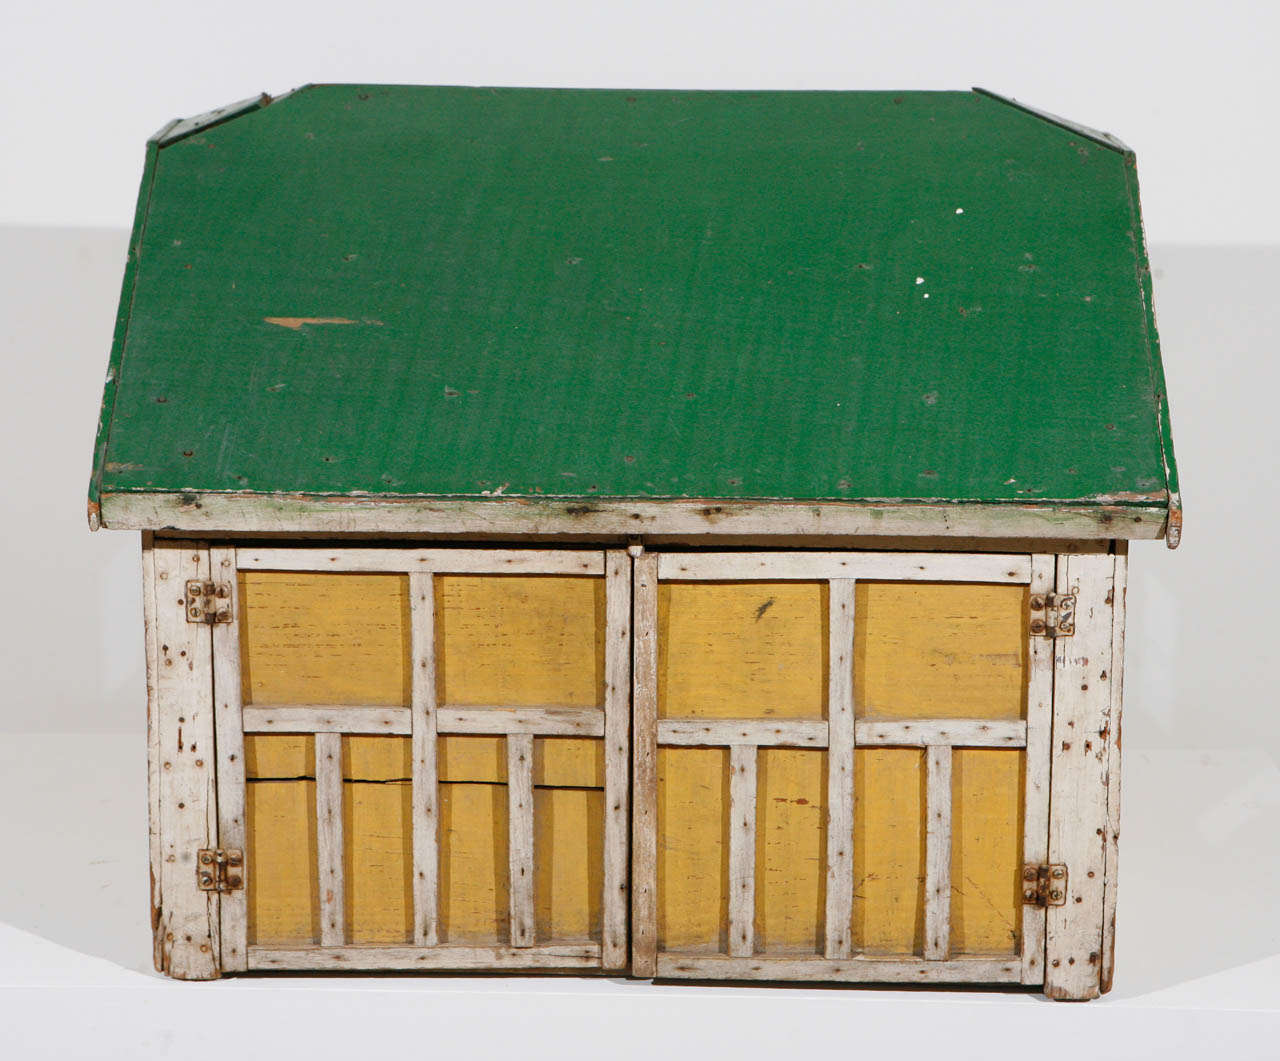 Ein hölzernes, originalgetreu bemaltes Architekturmodell einer Garage oder Scheune, das wahrscheinlich als Spielobjekt für Kinder verwendet wurde, mit einer einzigen Tür und drei Fenstern sowie einer sehr detaillierten Reihe von Doppeltüren, die